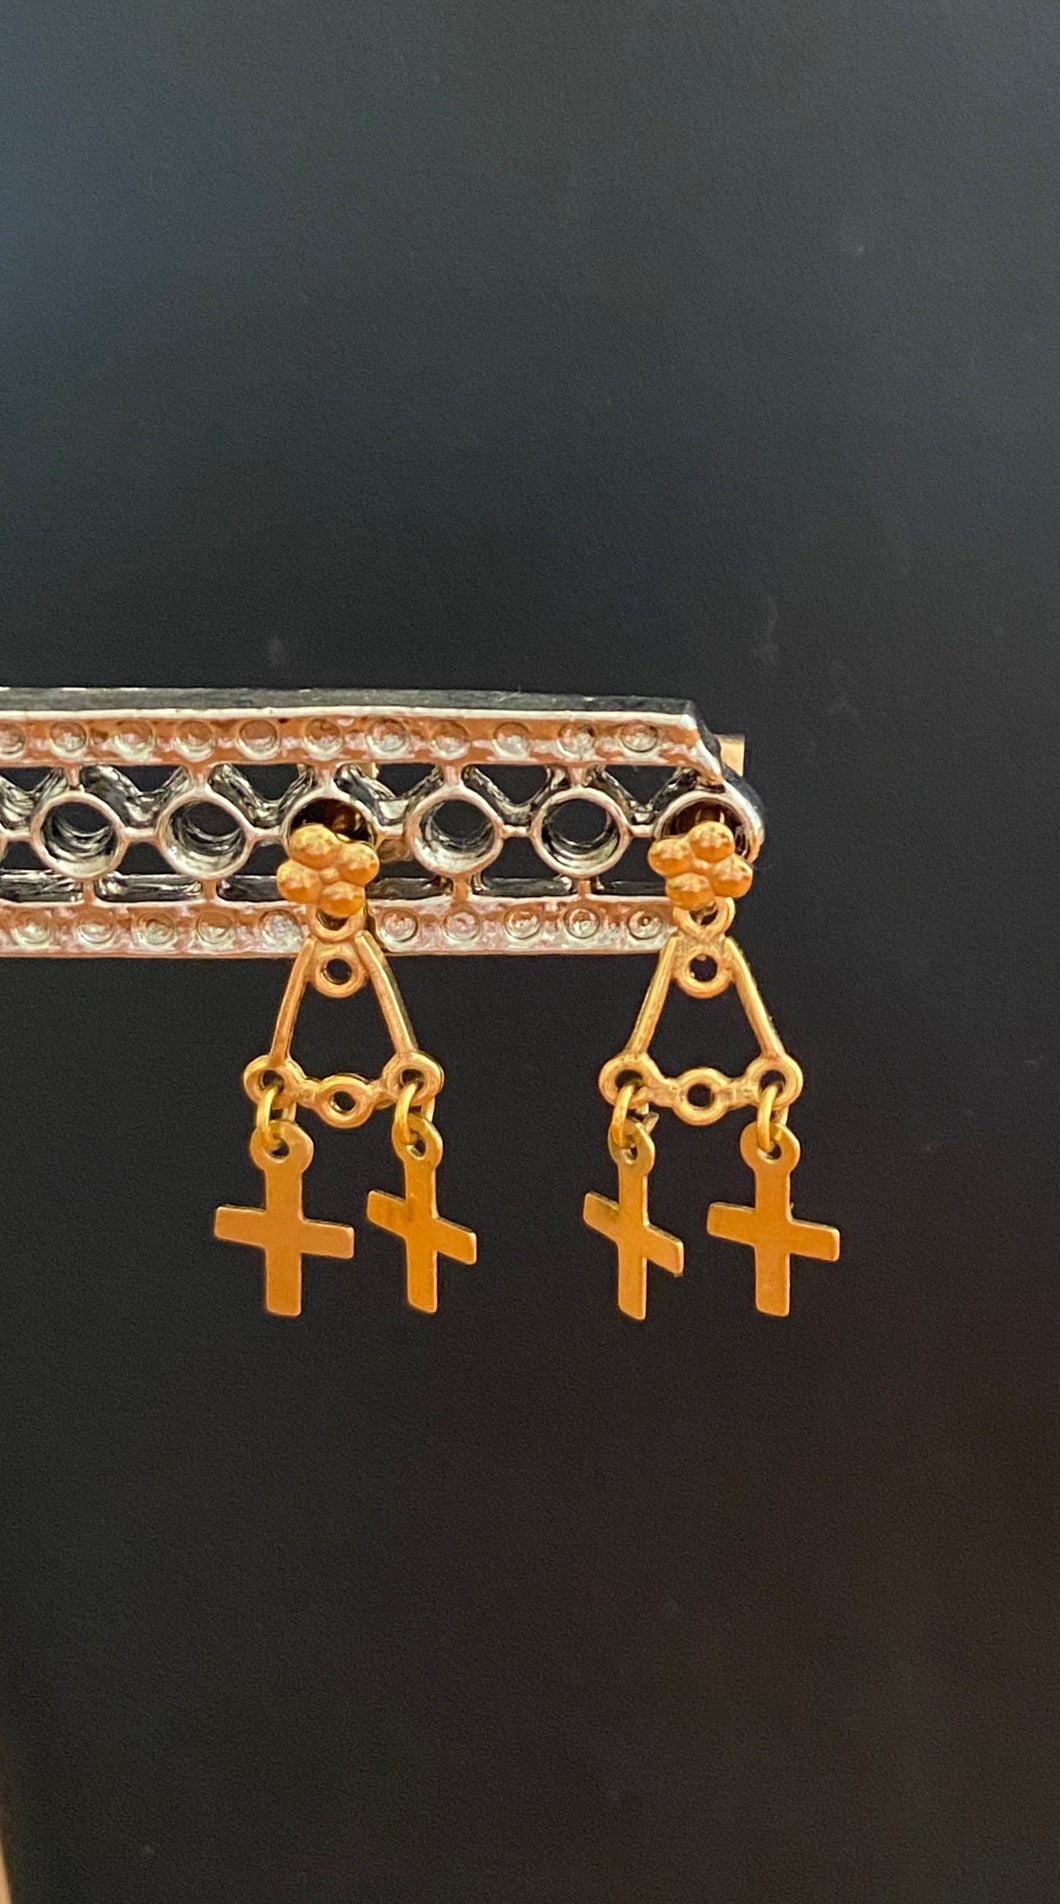 9k gold 2 cross earrings